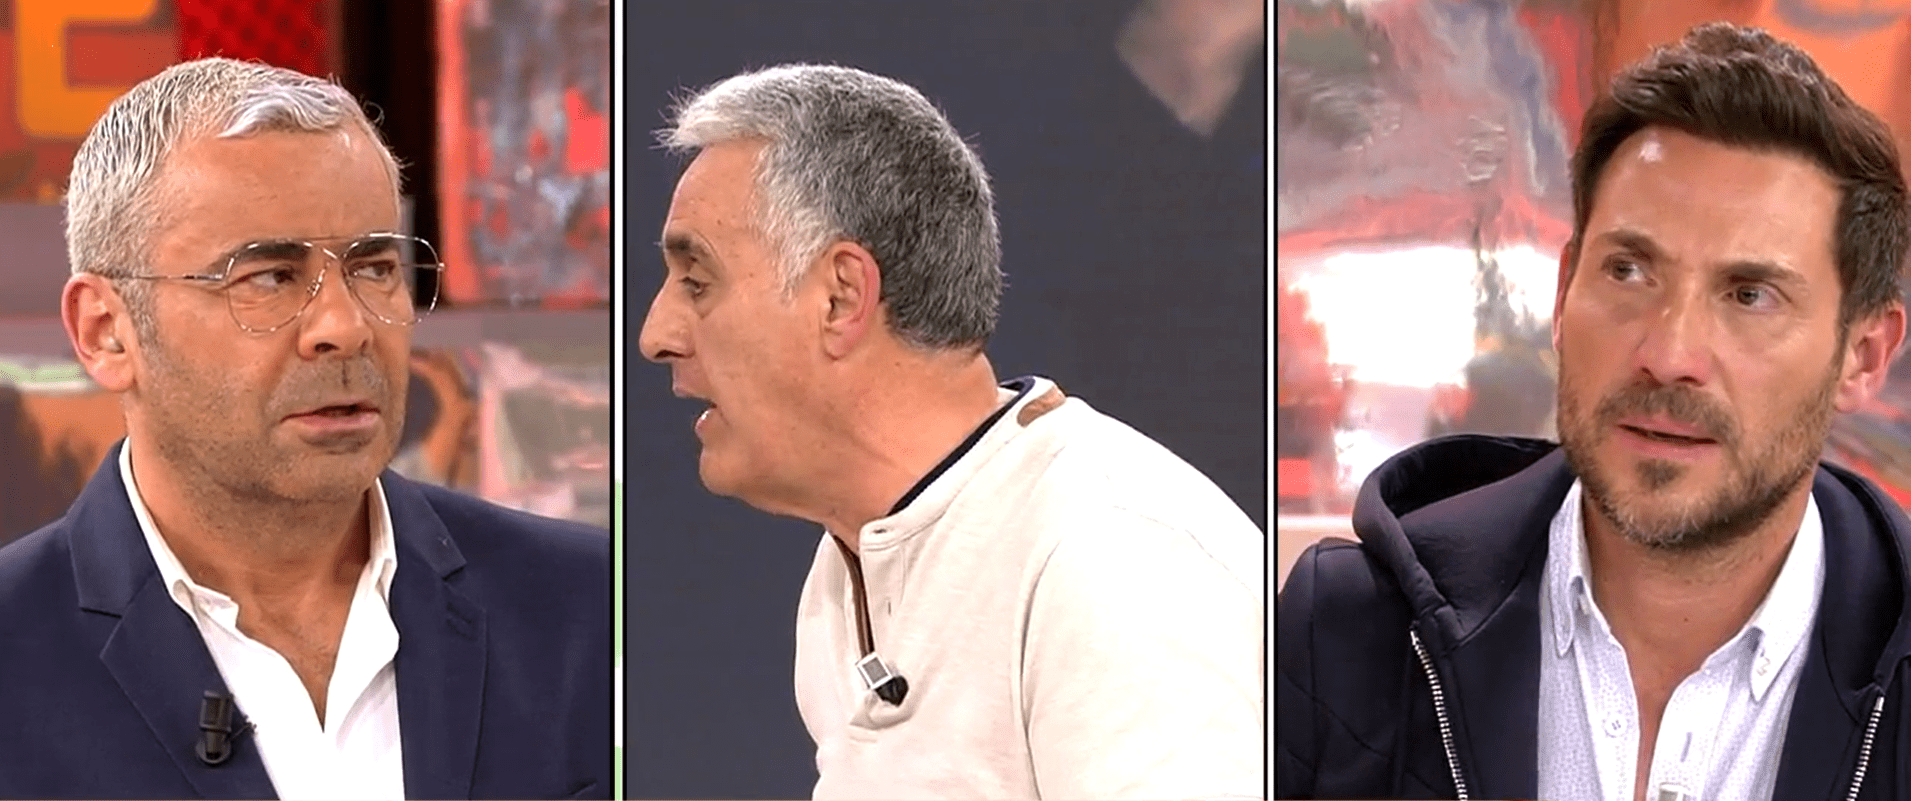 José María Franco ataca a Antonio David Flores en el plató de "Sálvame" | Foto: Telecinco